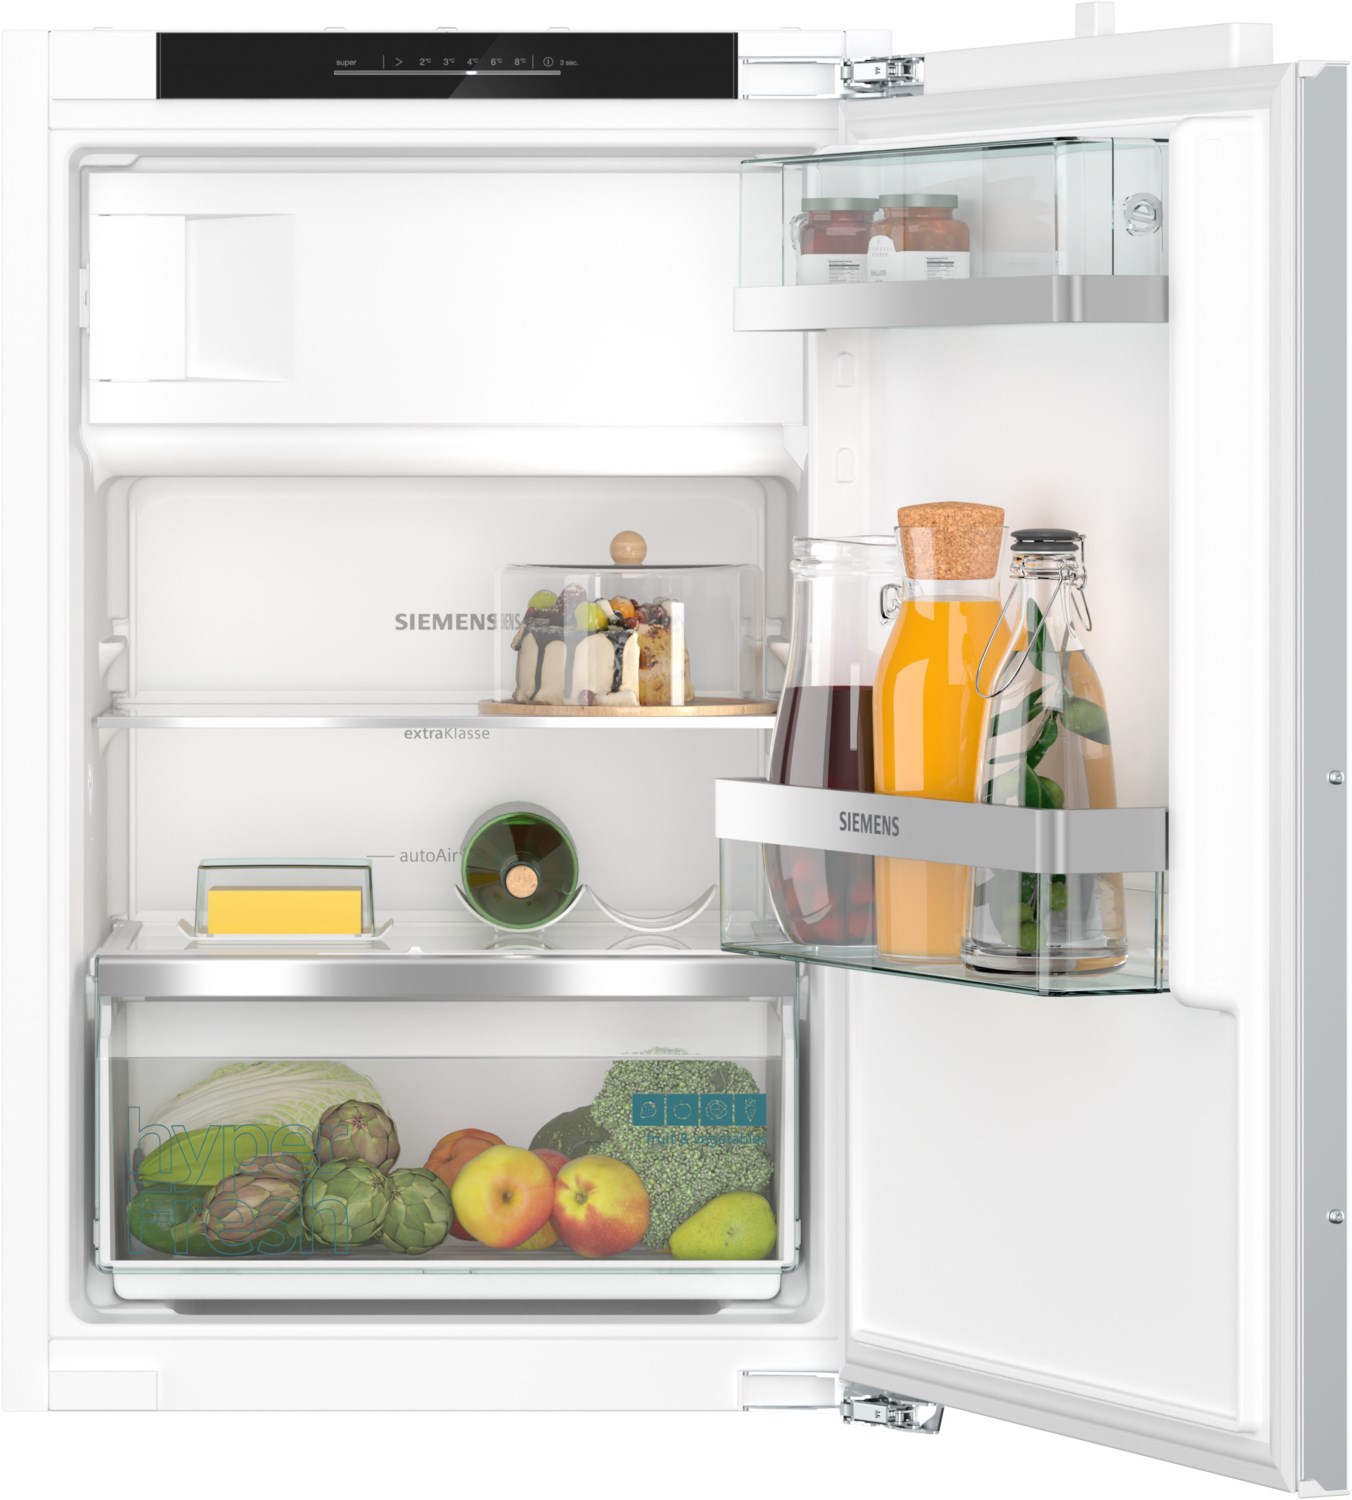 Siemens Einbau-Kühlschrank weiß